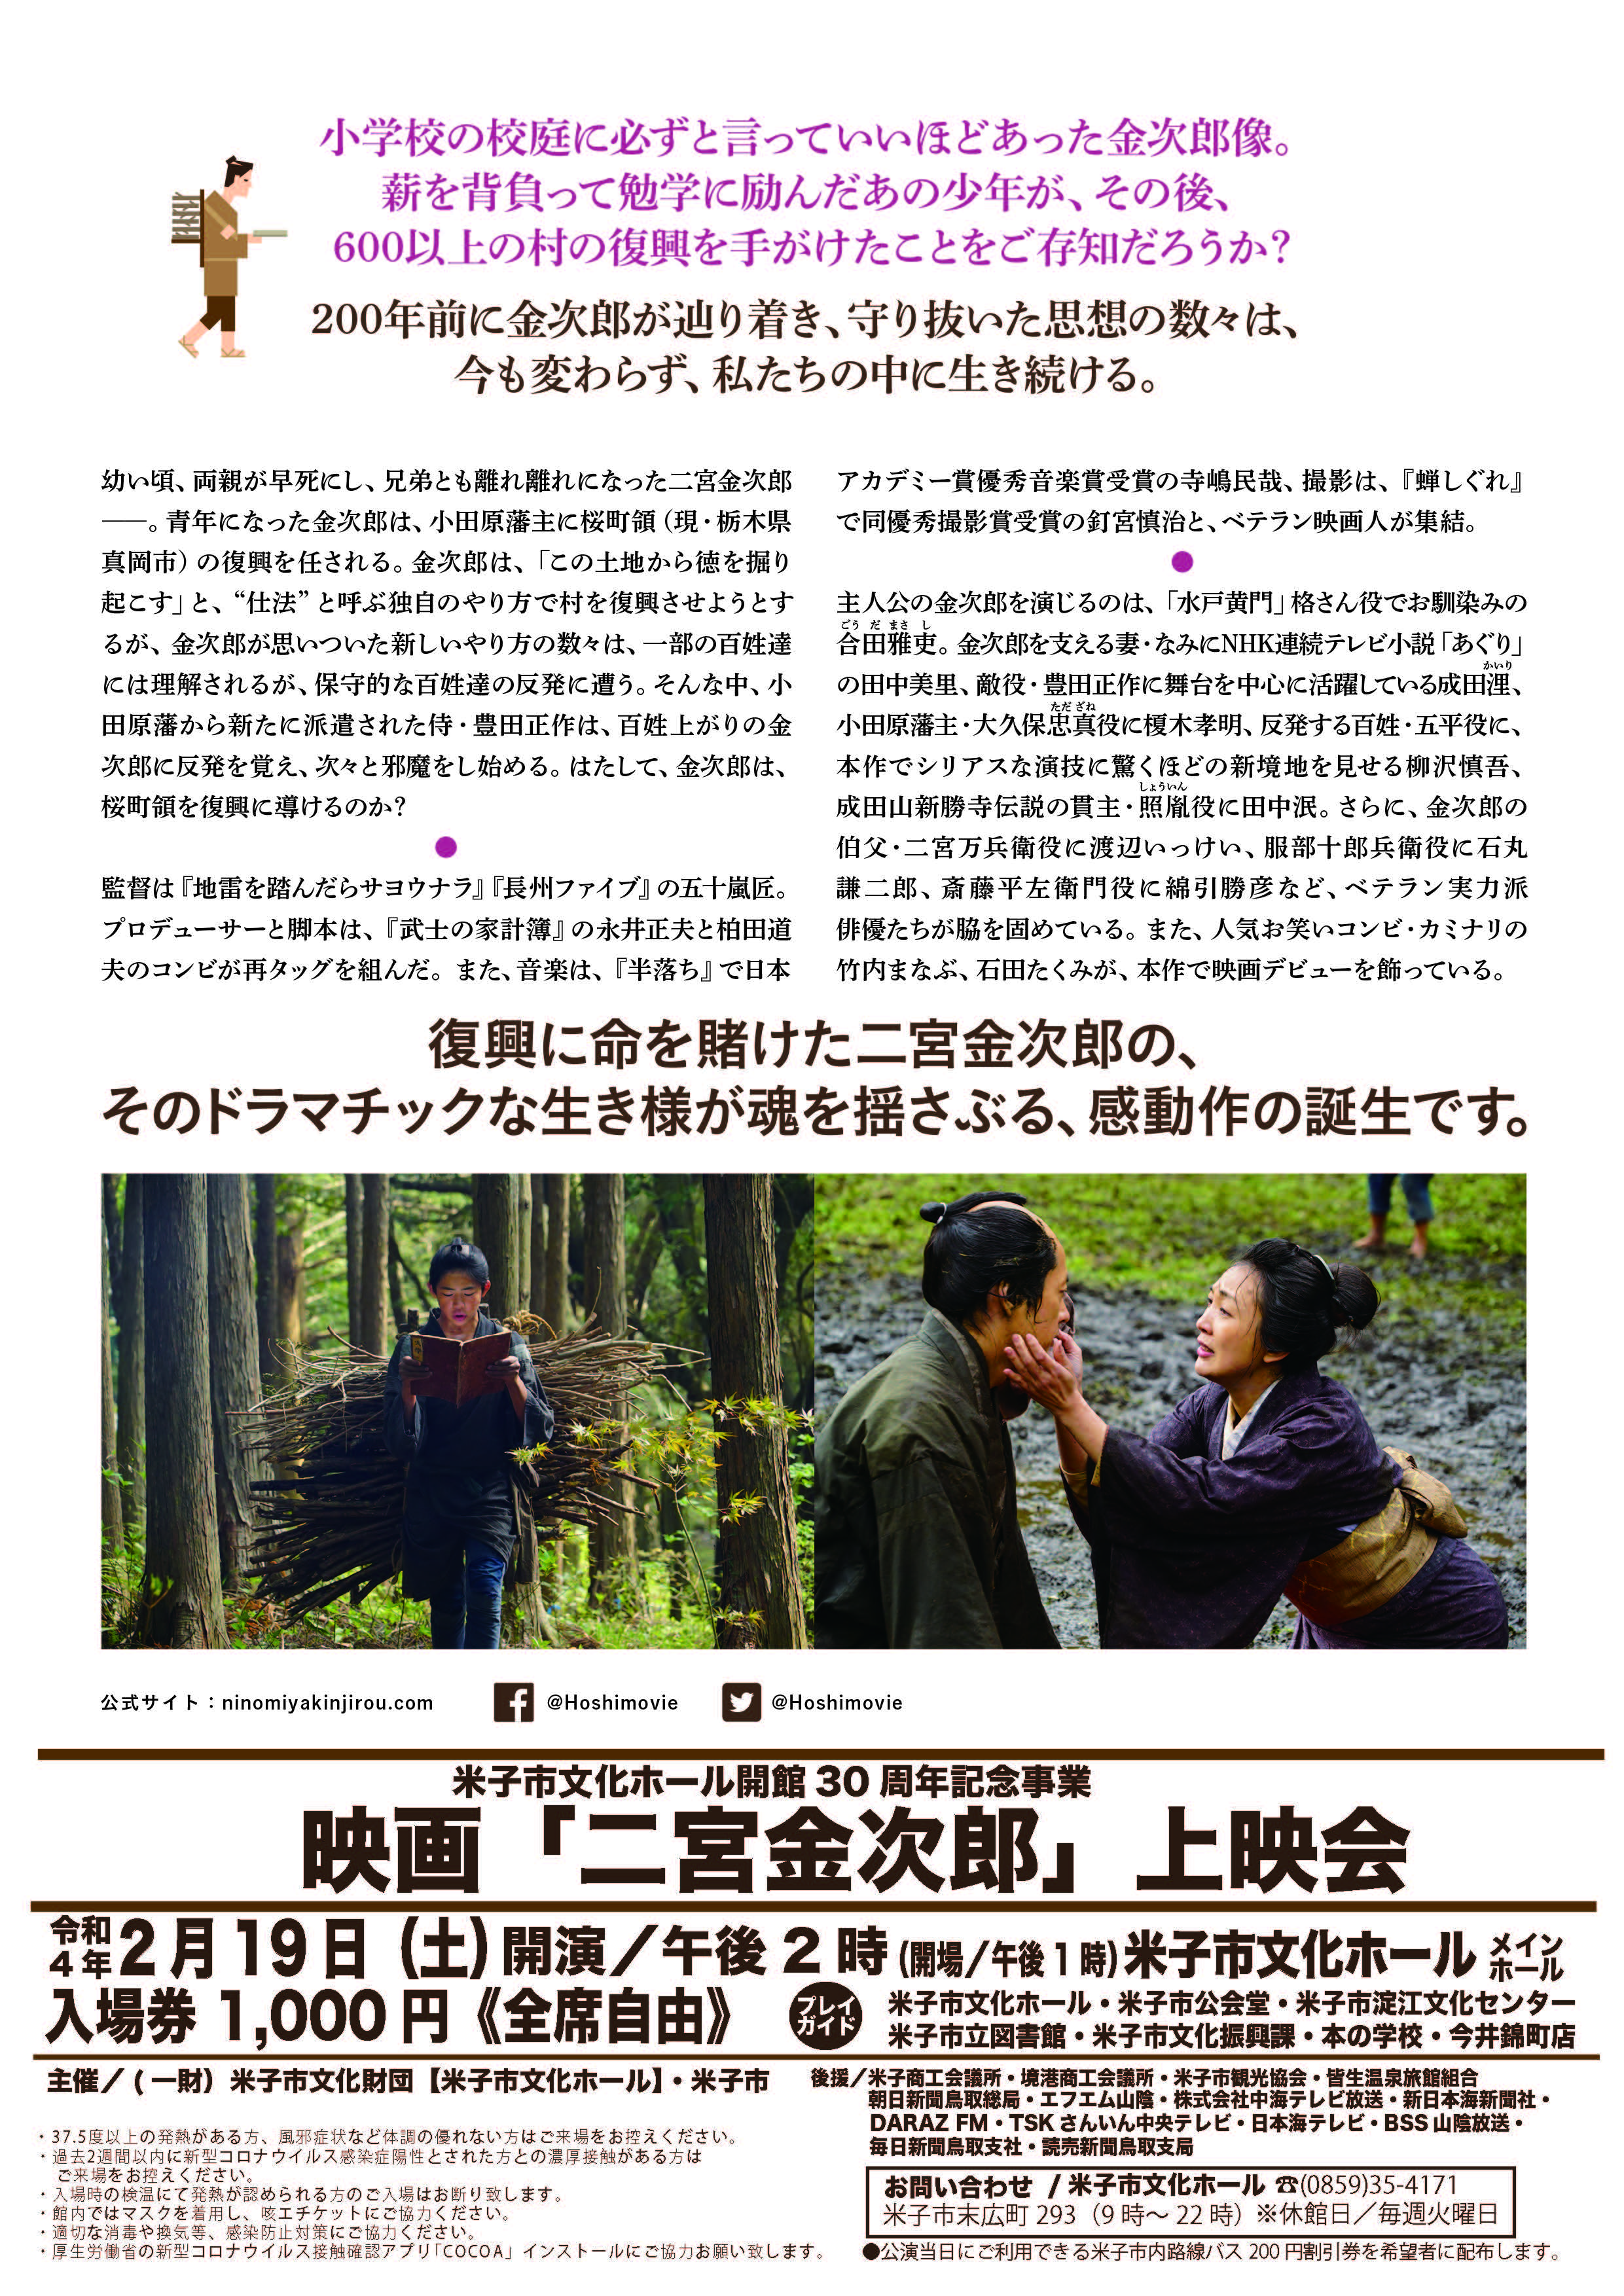 映画「二宮金次郎」映画「二宮金次郎」は特別な場合を除き、日本全国各地の市民会館・公民館等の各施設で上映致します。					INFORMATIONお知らせ鳥取県米子市で上映会を開催します！（4月23日更新）